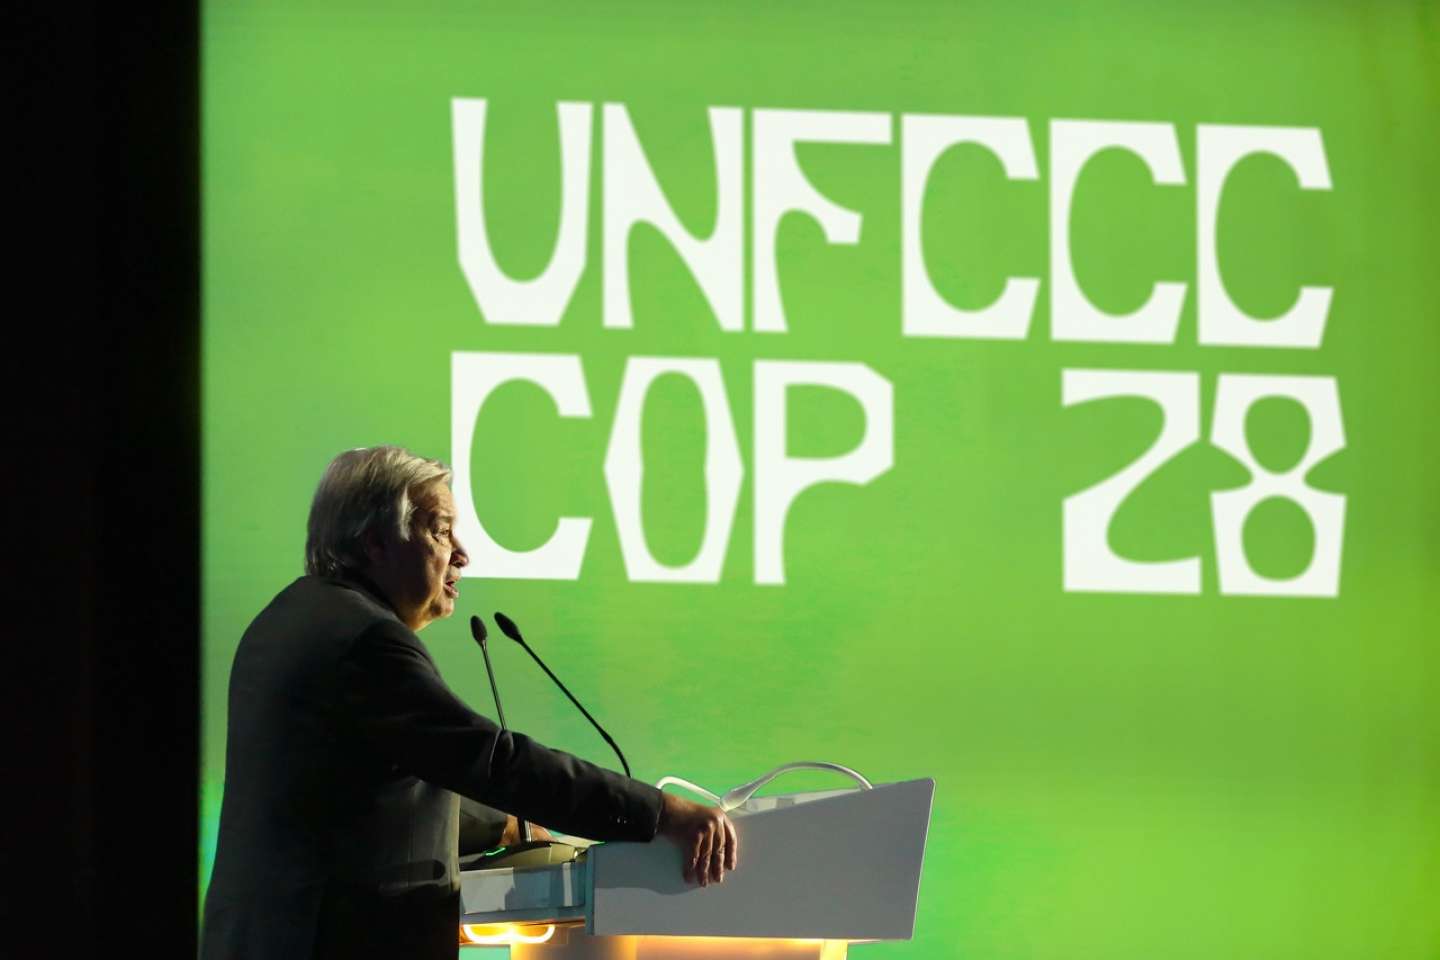 Unfccc Cop28